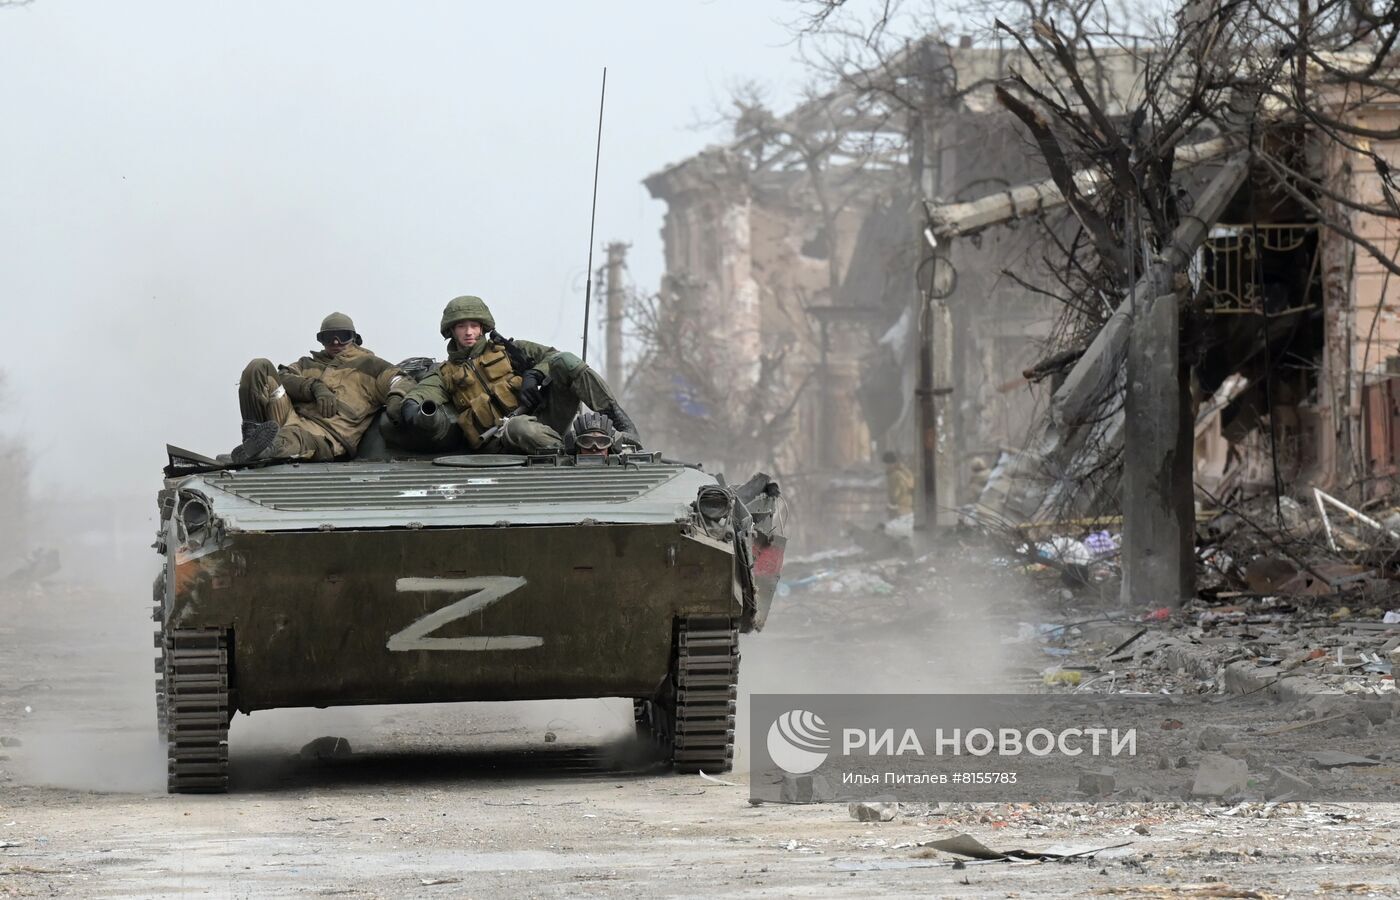 الجيش الروسي يعلن القضاء على مئات العسكريين الأوكرانيين وتدمير مخازن للأسلحة و32 مسيرة